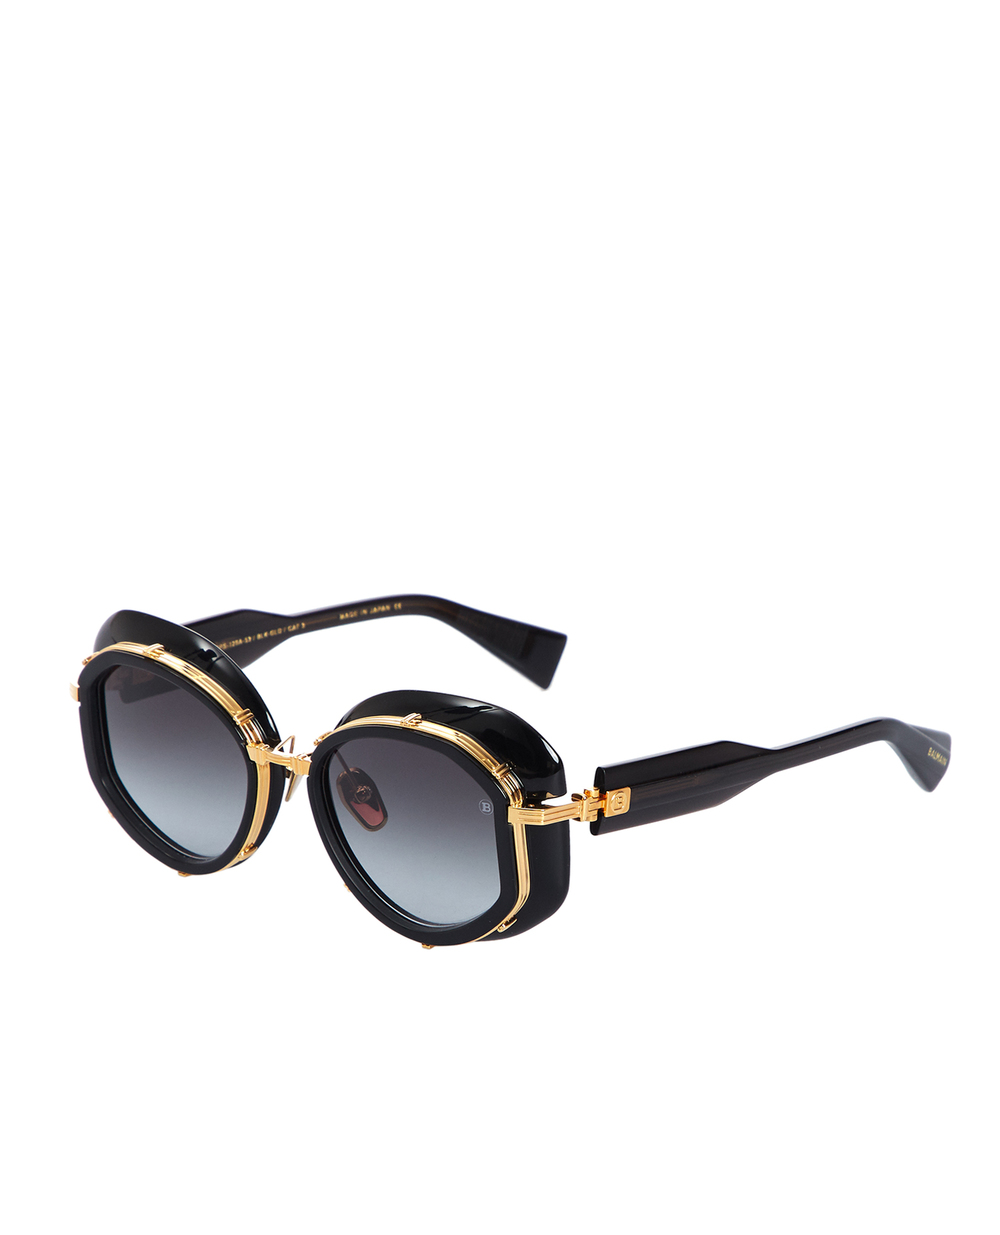 Солнцезащитные очки Brigitte Balmain BPS-129A-53, черный цвет • Купить в интернет-магазине Kameron